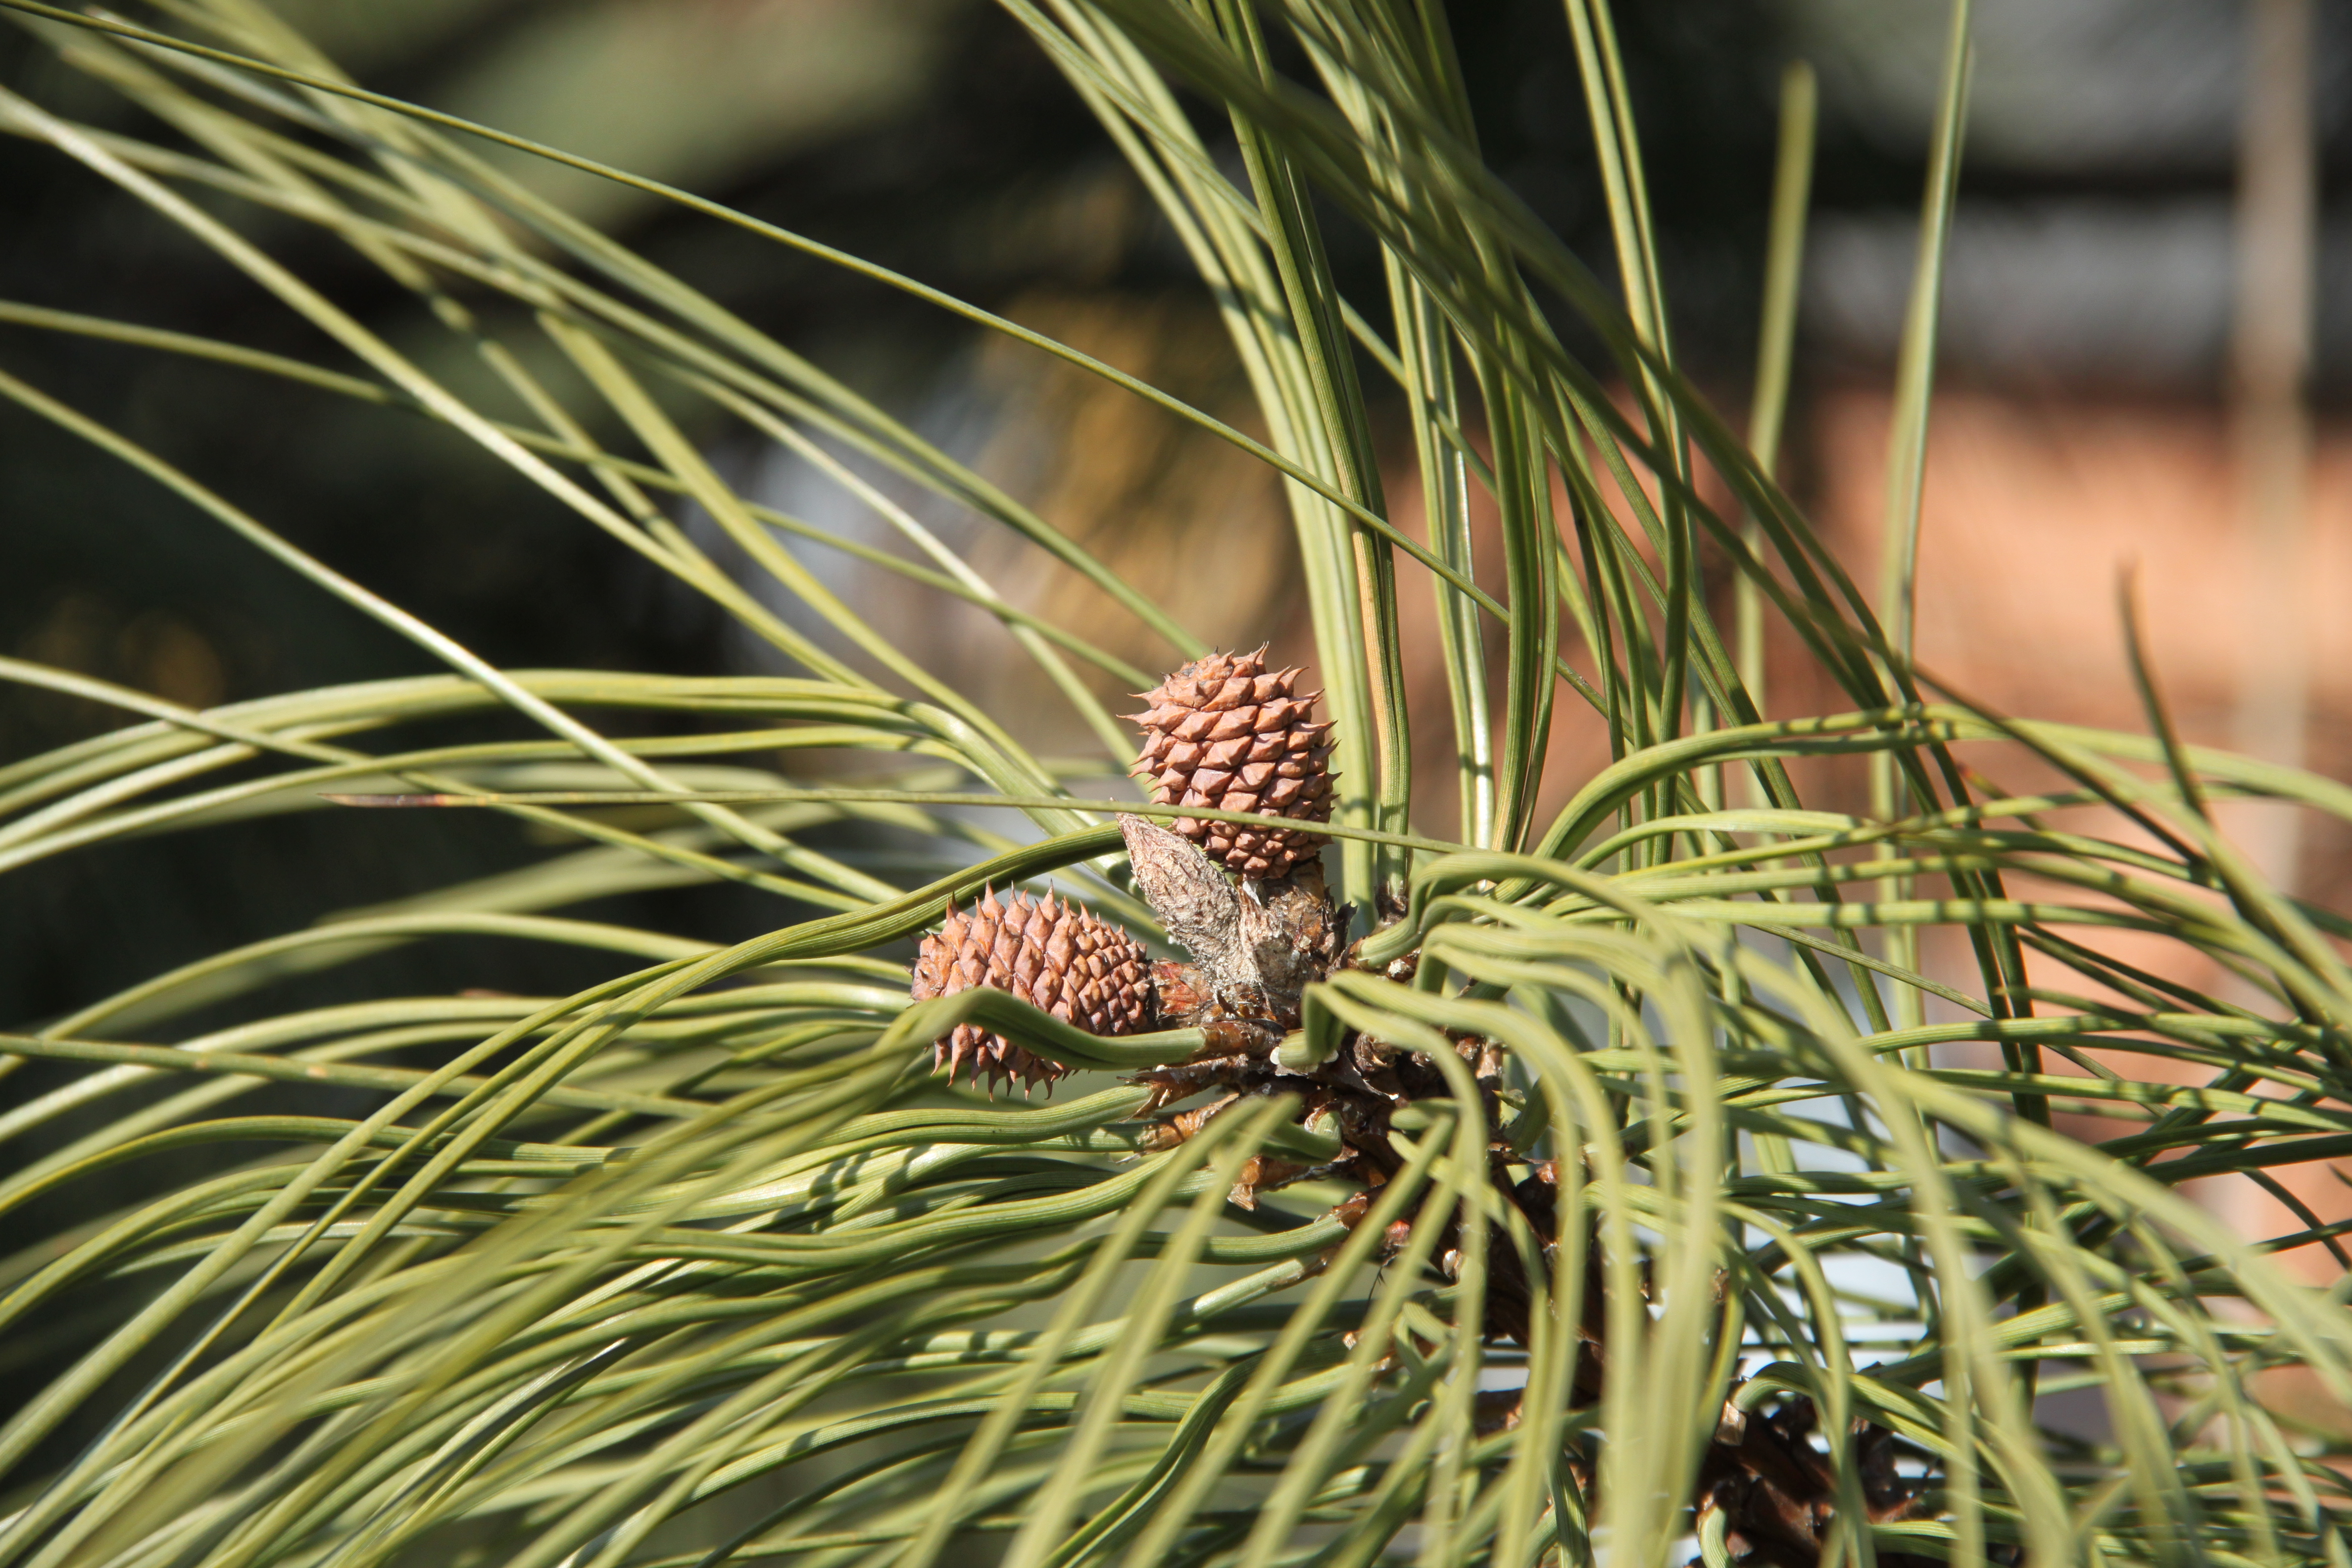 Pinus ponderosa female cones